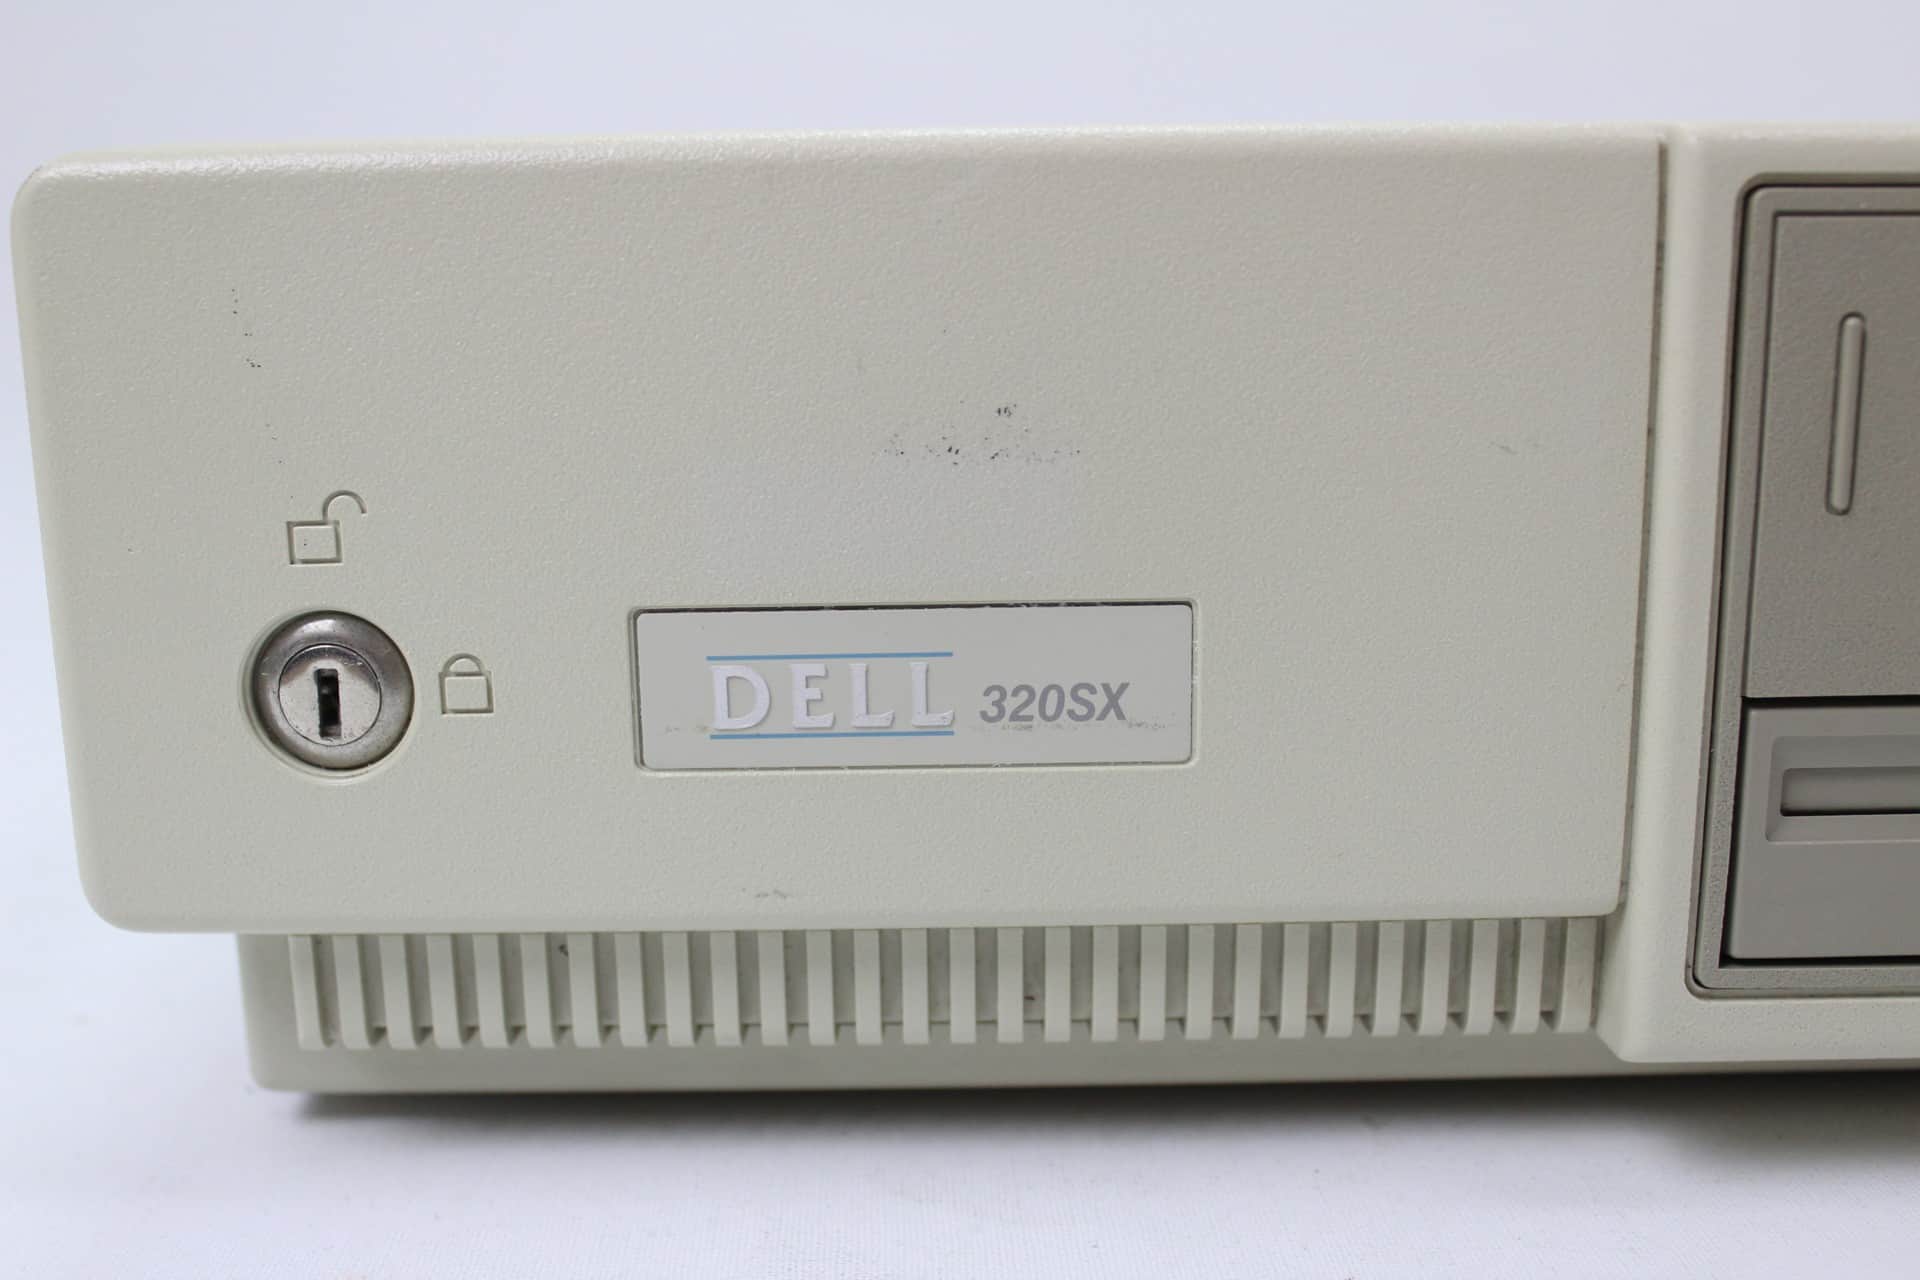 DELL 320SX - Výrobce a model